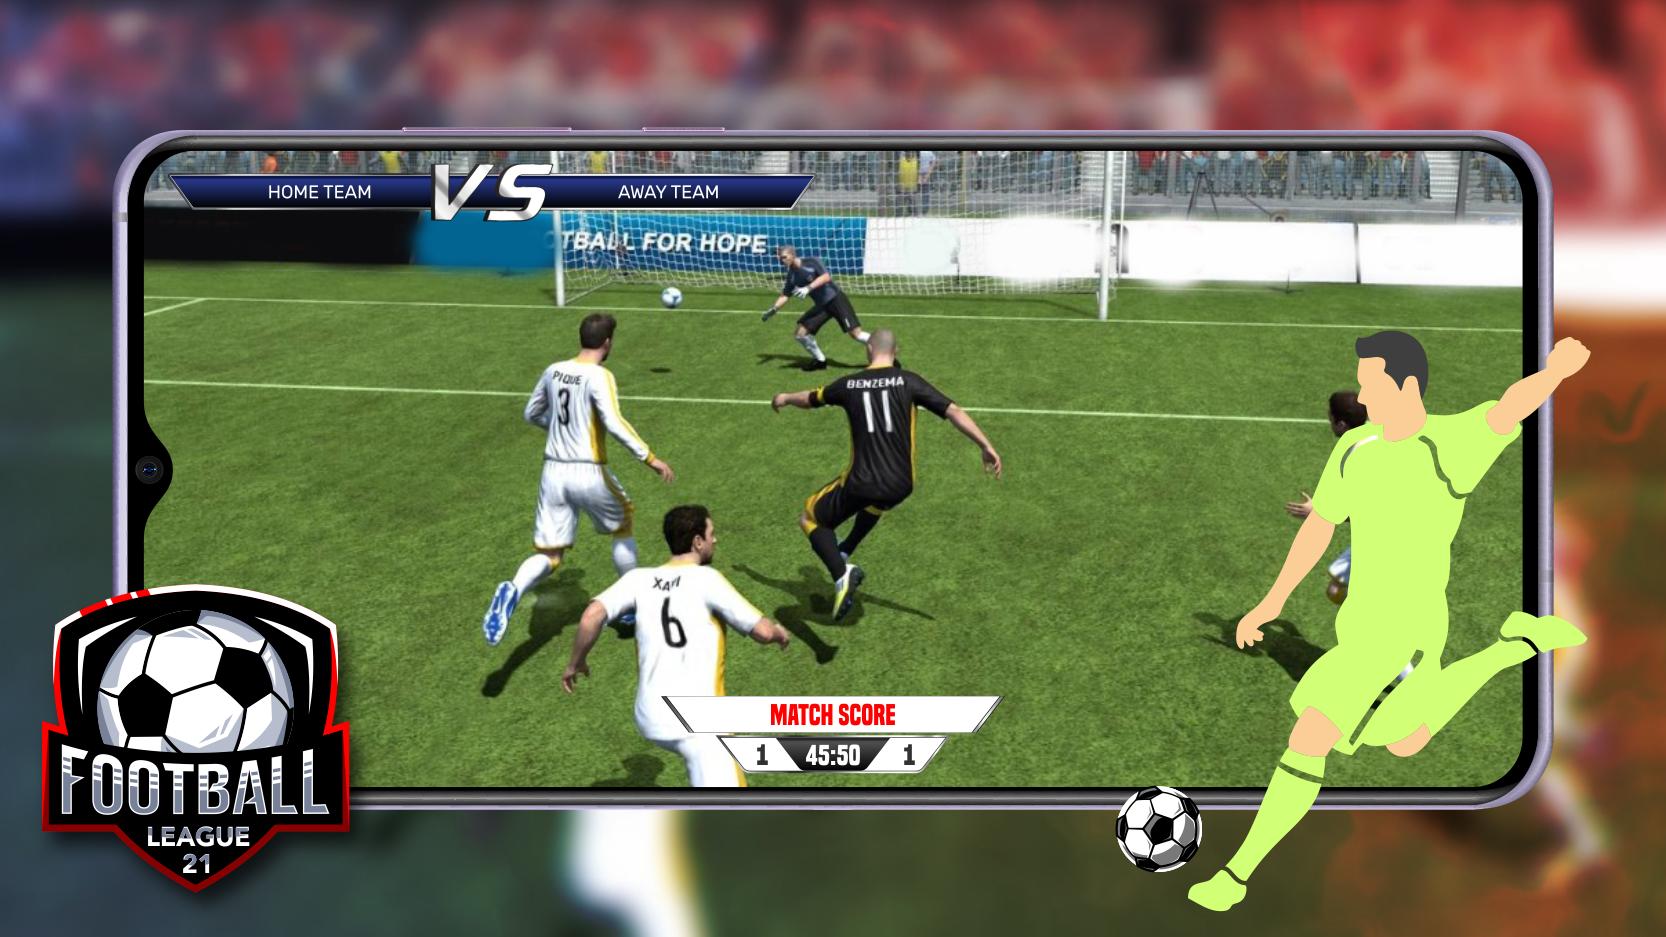 Football League 21 1.0 Screenshot 2